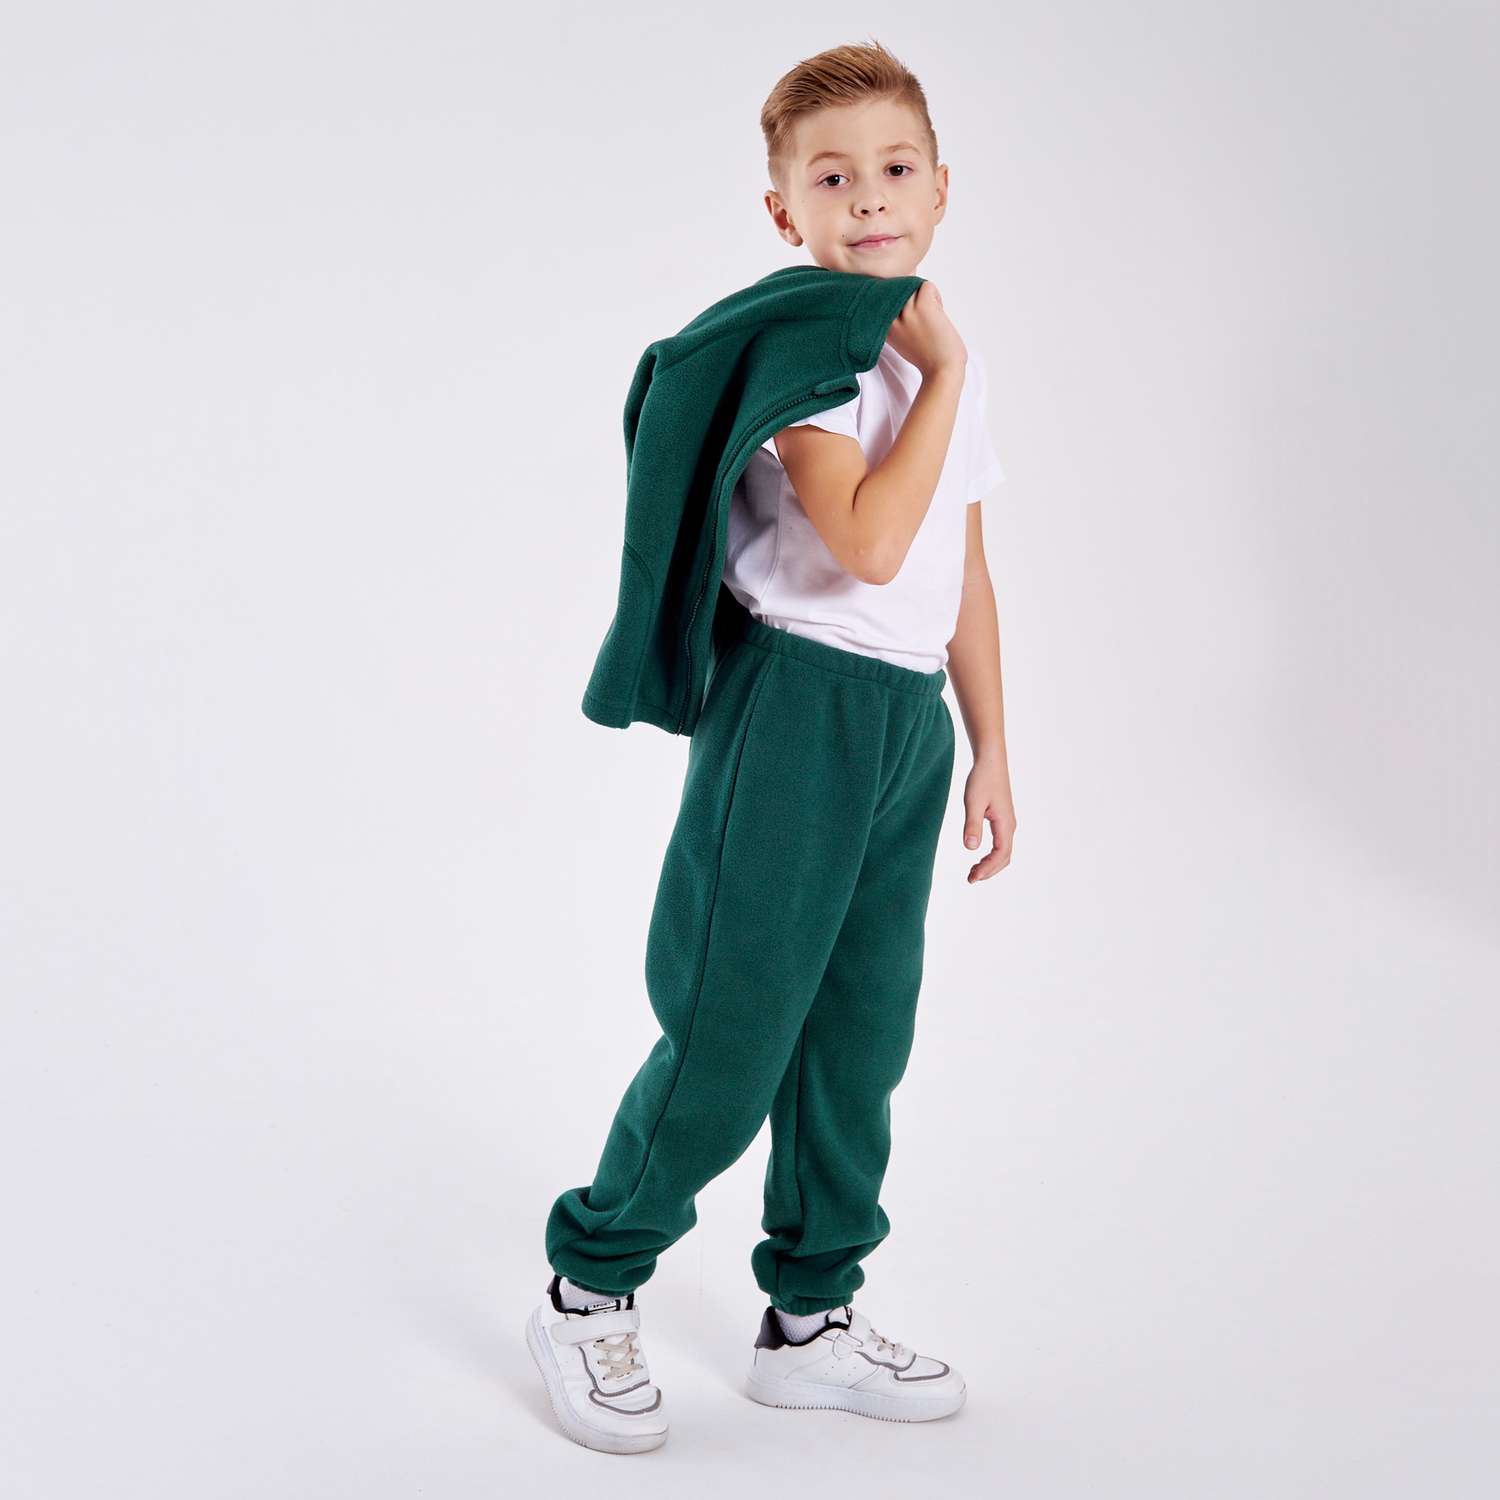 Костюм CHILDREAM костюм флисовый поддева зеленый - фото 2